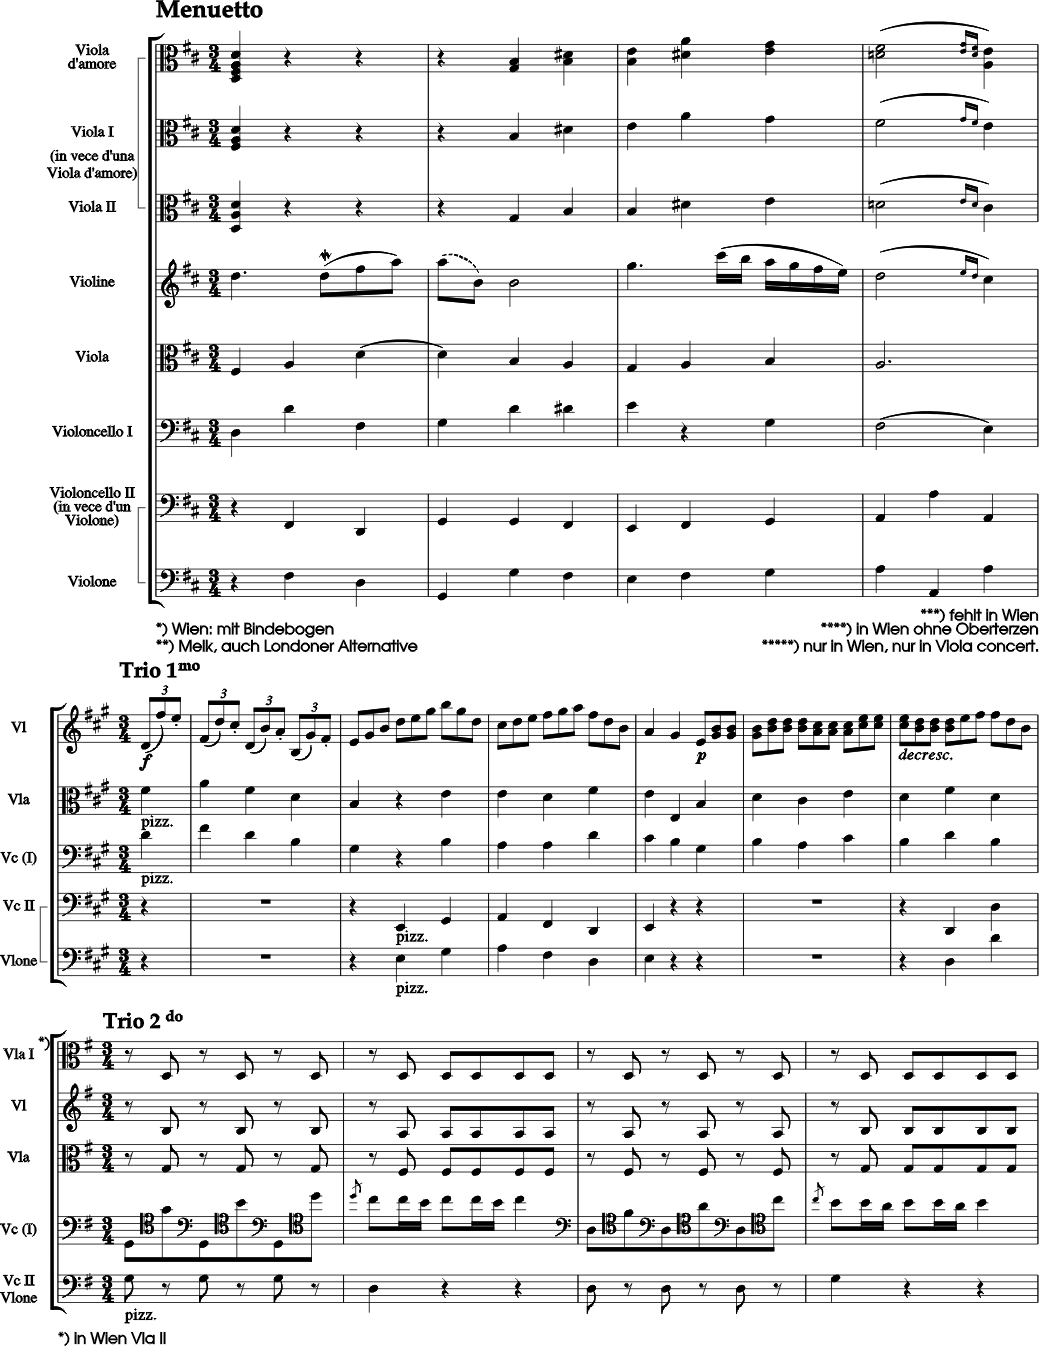 Viola d'amore, Violine, Viola, Violoncello und Violone, zwei Violen, Violine, Viola, Violoncello und Violone